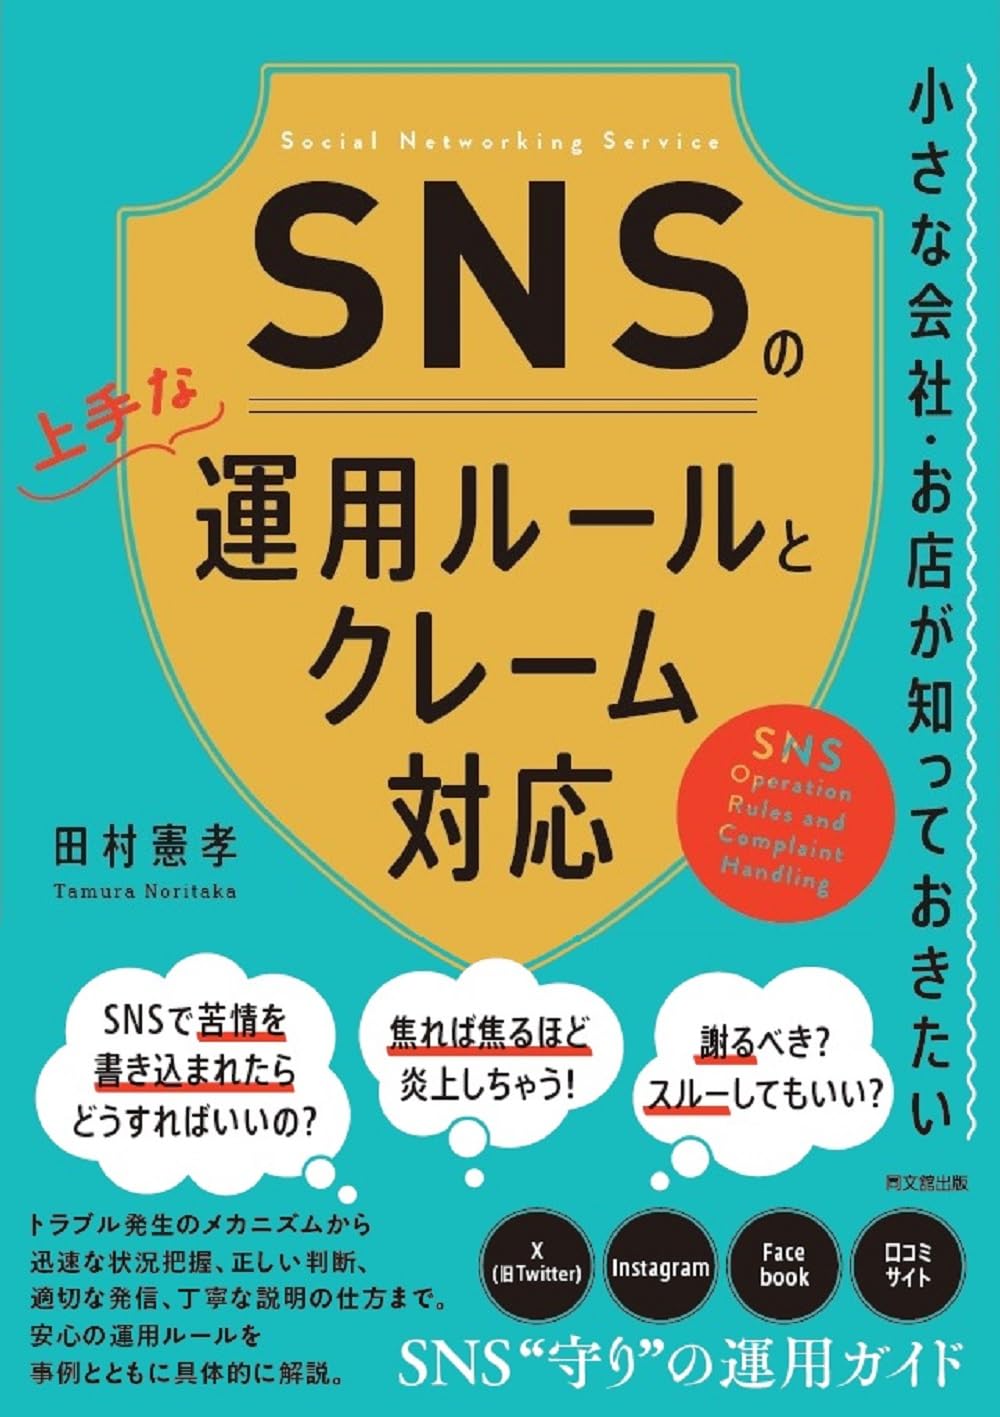 【写真】『小さな会社・お店が知っておきたい SNSの上手な運用ルールとクレーム対応』（田村憲孝著）は、企業のSNS運用をわかりやすくを解説